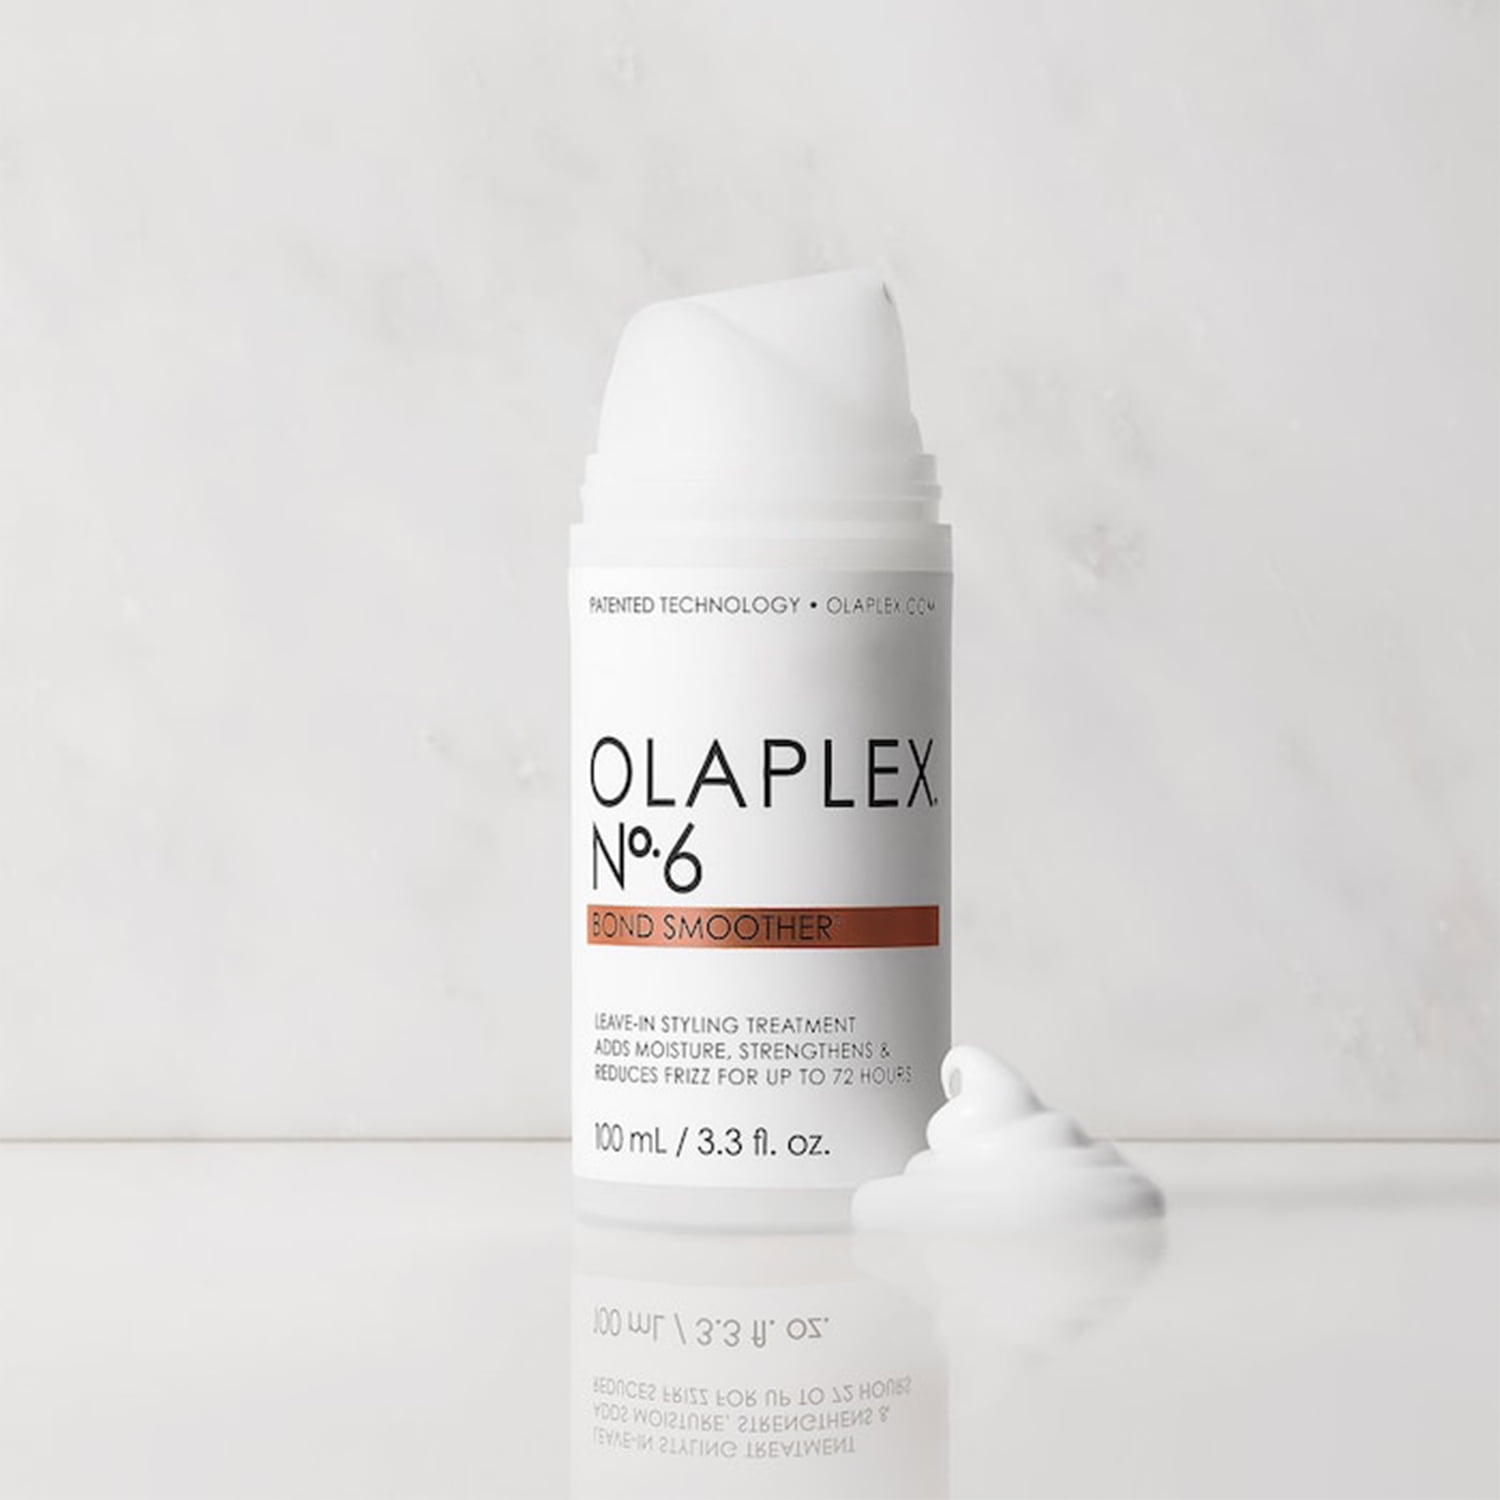 Forsømme fra nu af Ideel Olaplex No 6 Bond Smoother Leave in Styling Treatment, 100 ml / 3.3 fl. oz  - Walmart.com